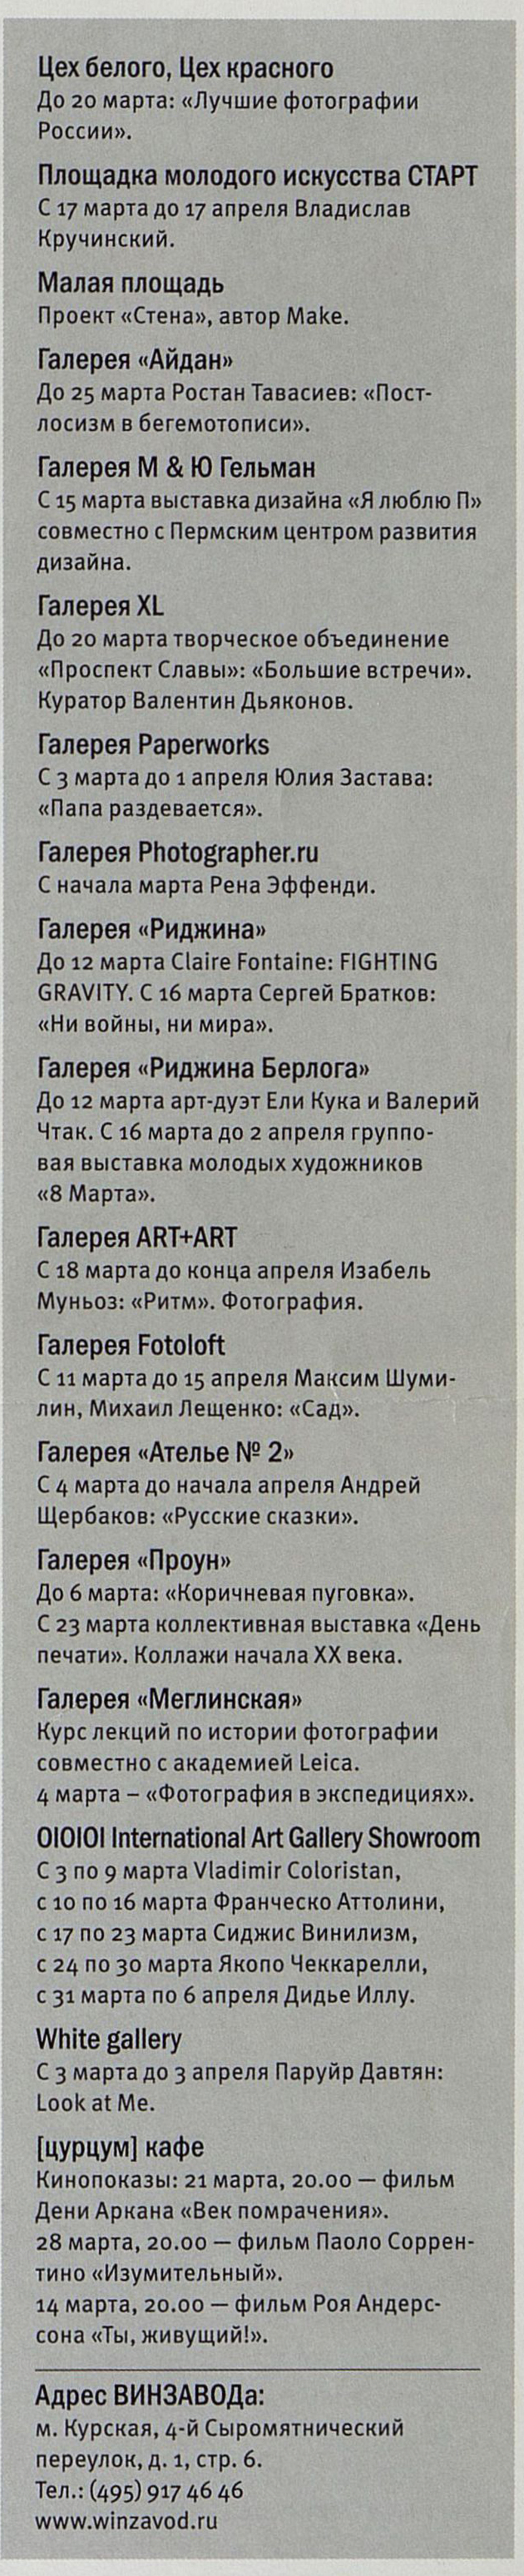 Анонсы выставок из газеты Winzavod Art Review №19 март 2011